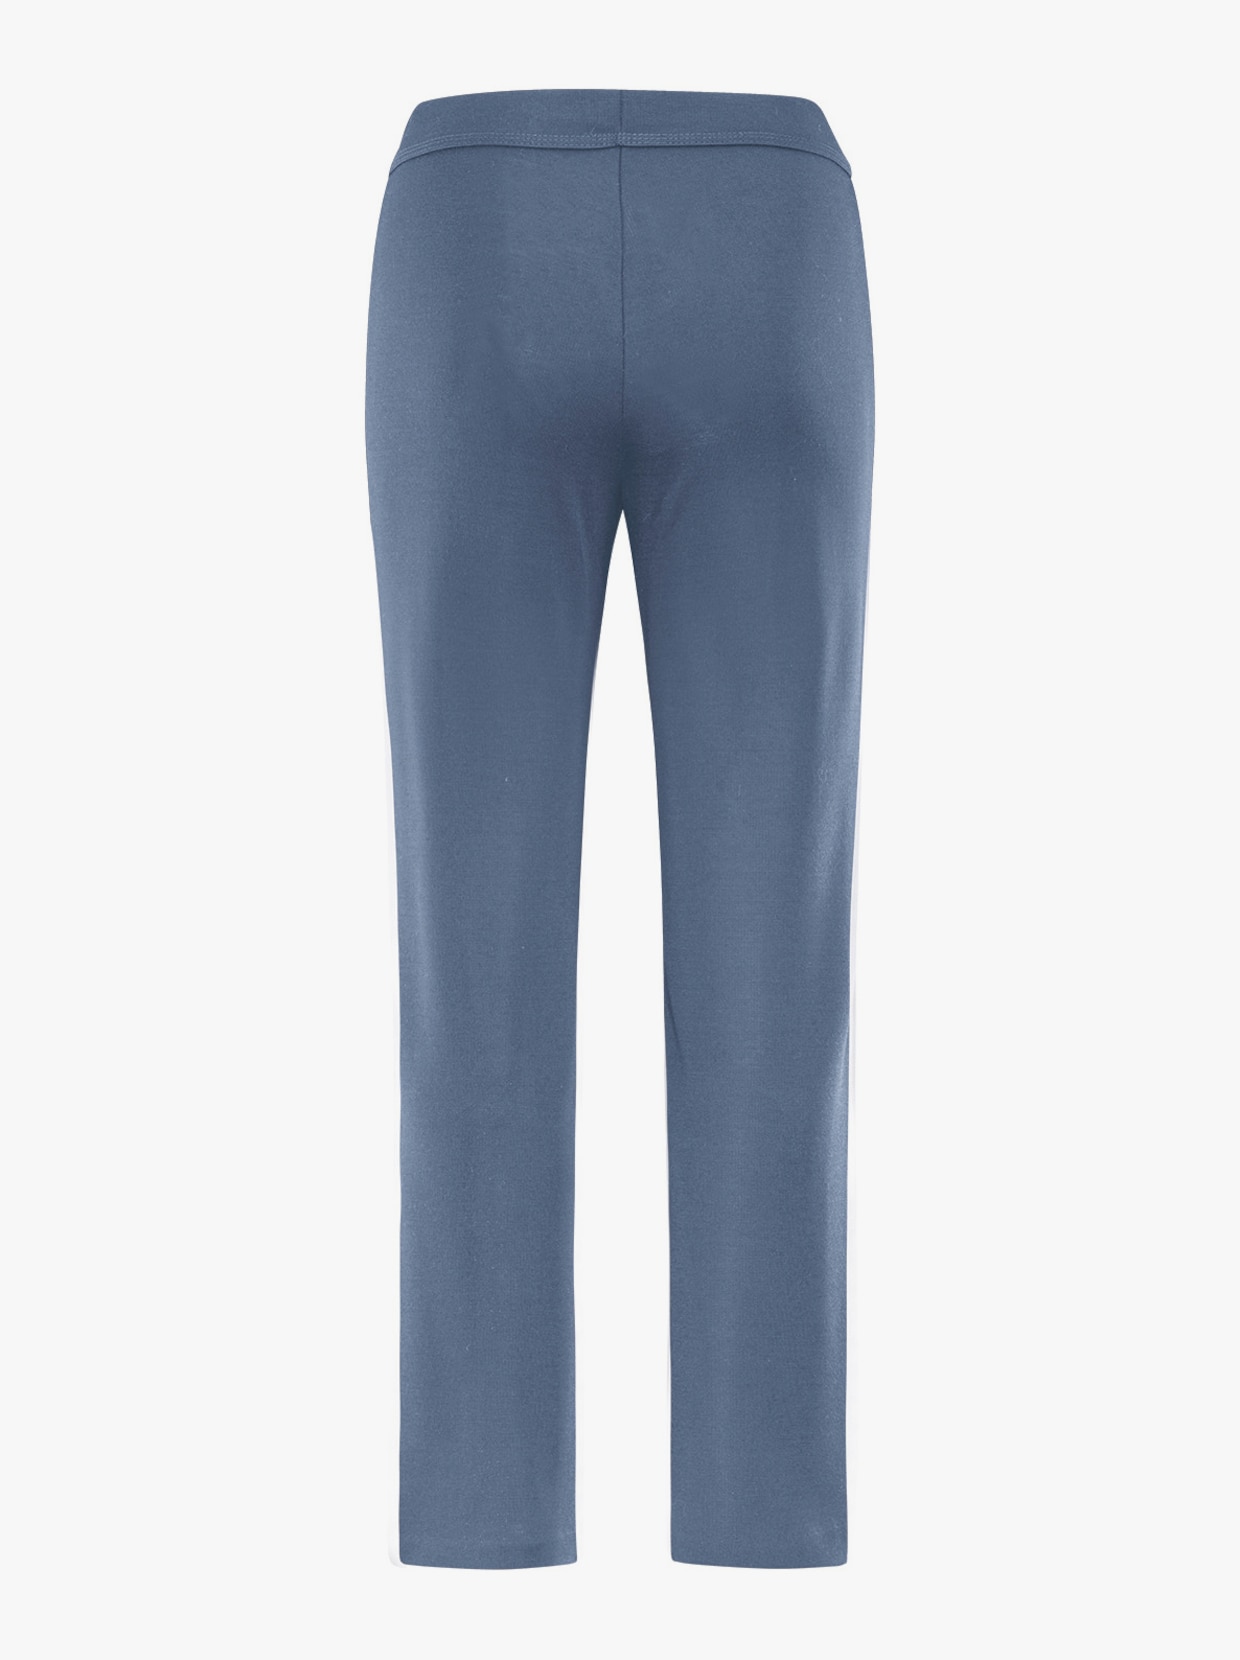 schneider sportswear Damen-Freizeithose - jeansblau